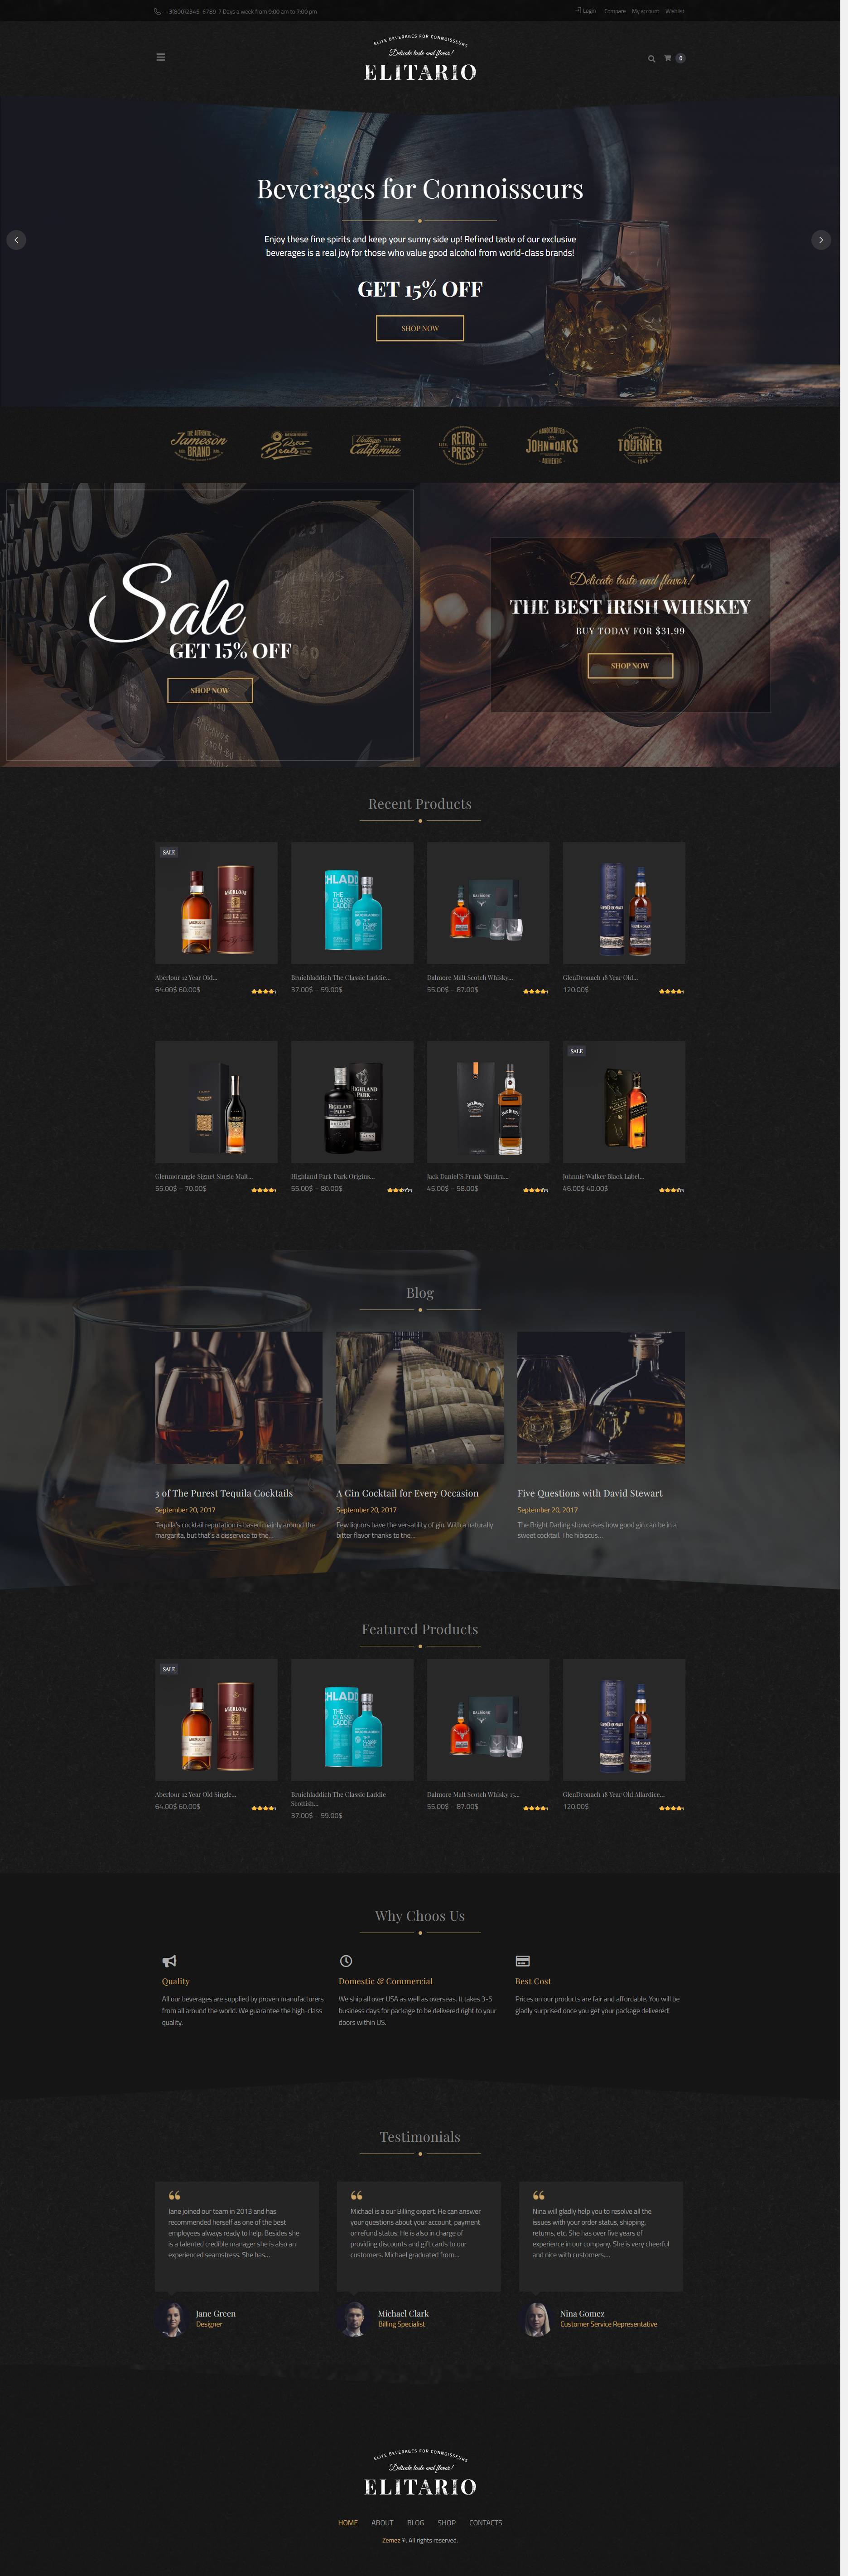 高端大气的HTML酒水商城网站模板